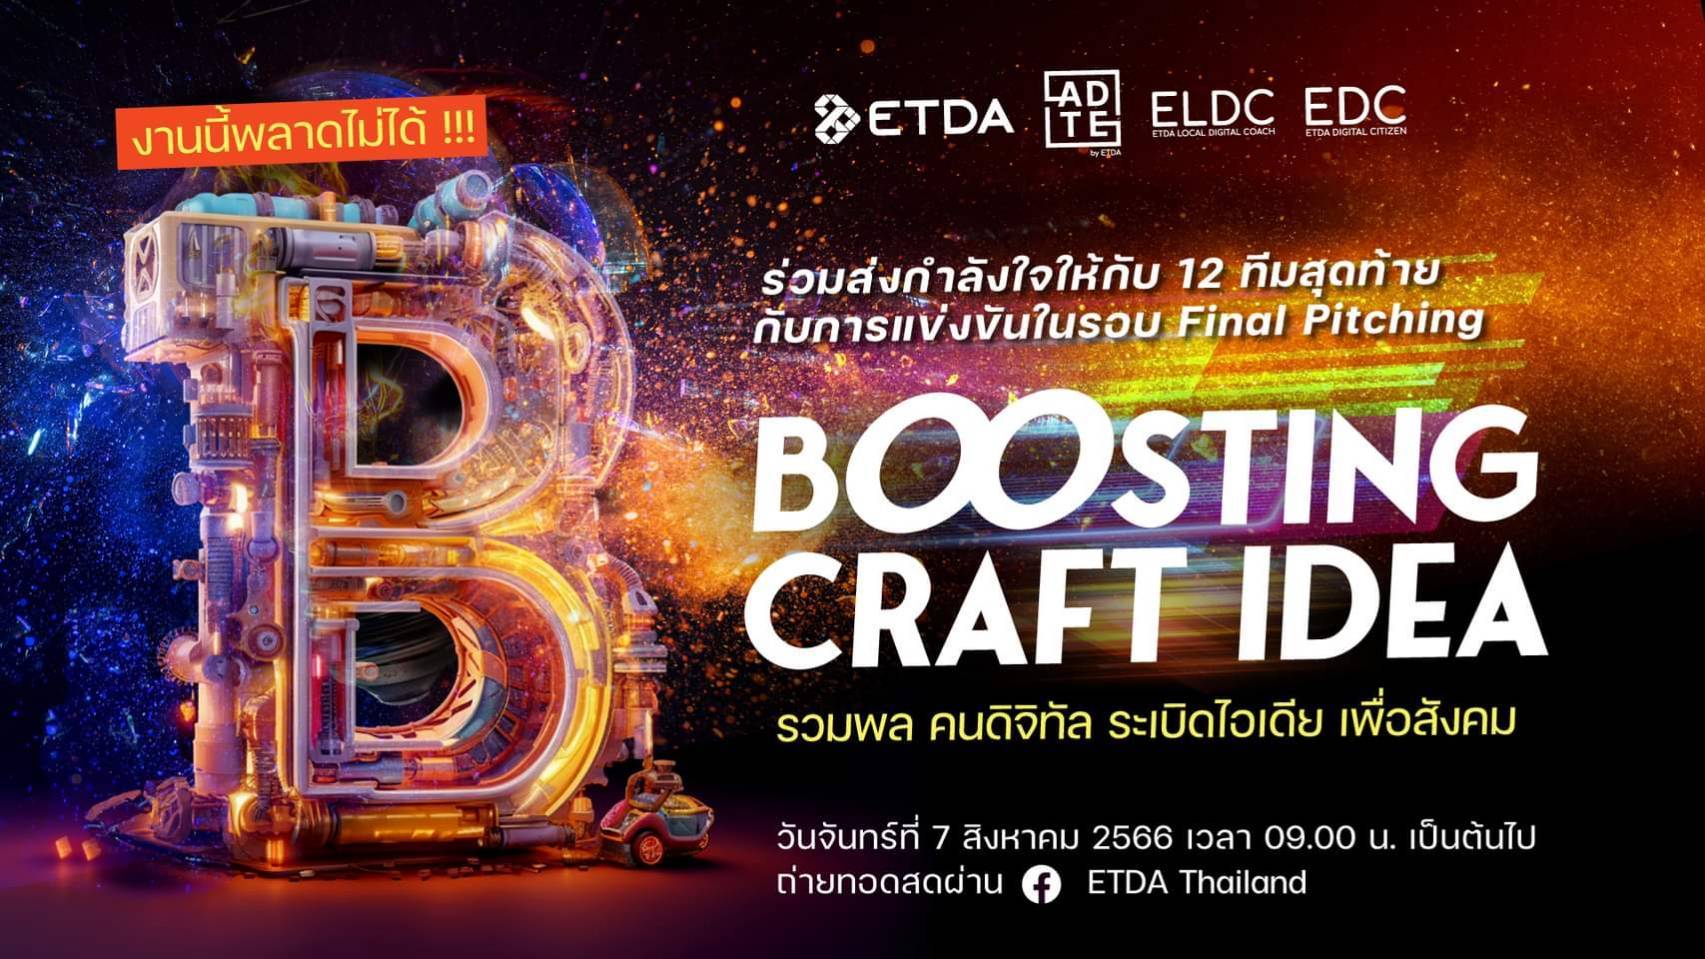 ETDA ชวนร่วมเชียร์และลุ้น 12 ทีมสุดท้าย ที่จะคว้ารางวัลสุดยอดแผนธุรกิจอีคอมเมิร์ซชุมชน ในงาน Boosting Craft Idea